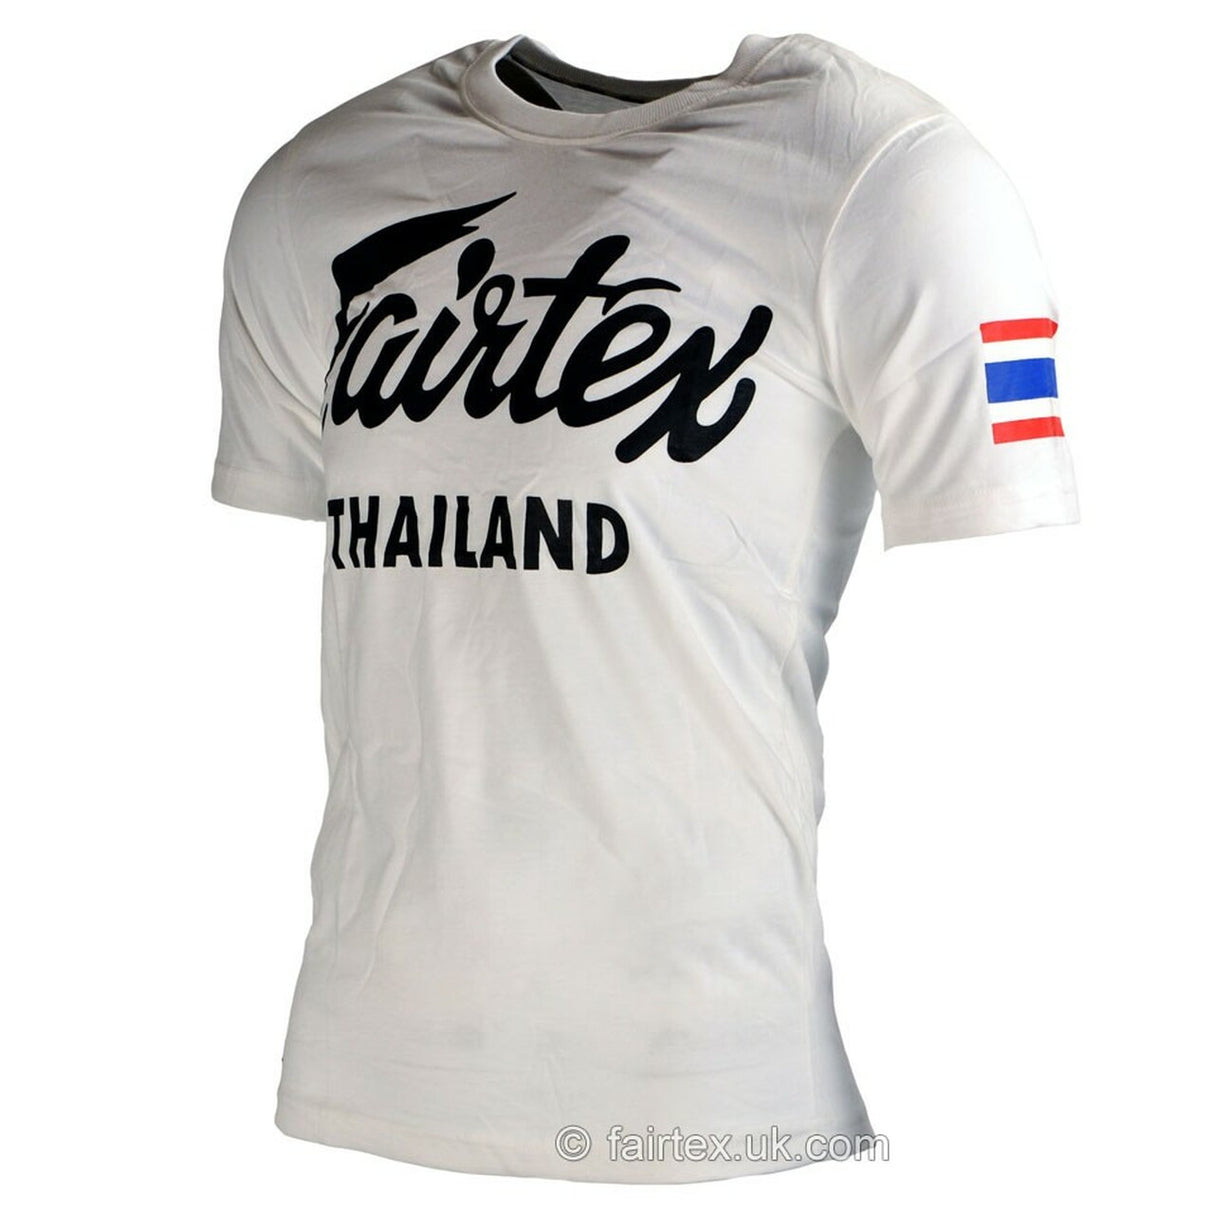 Fairtex Thailand T Shirt White Large 